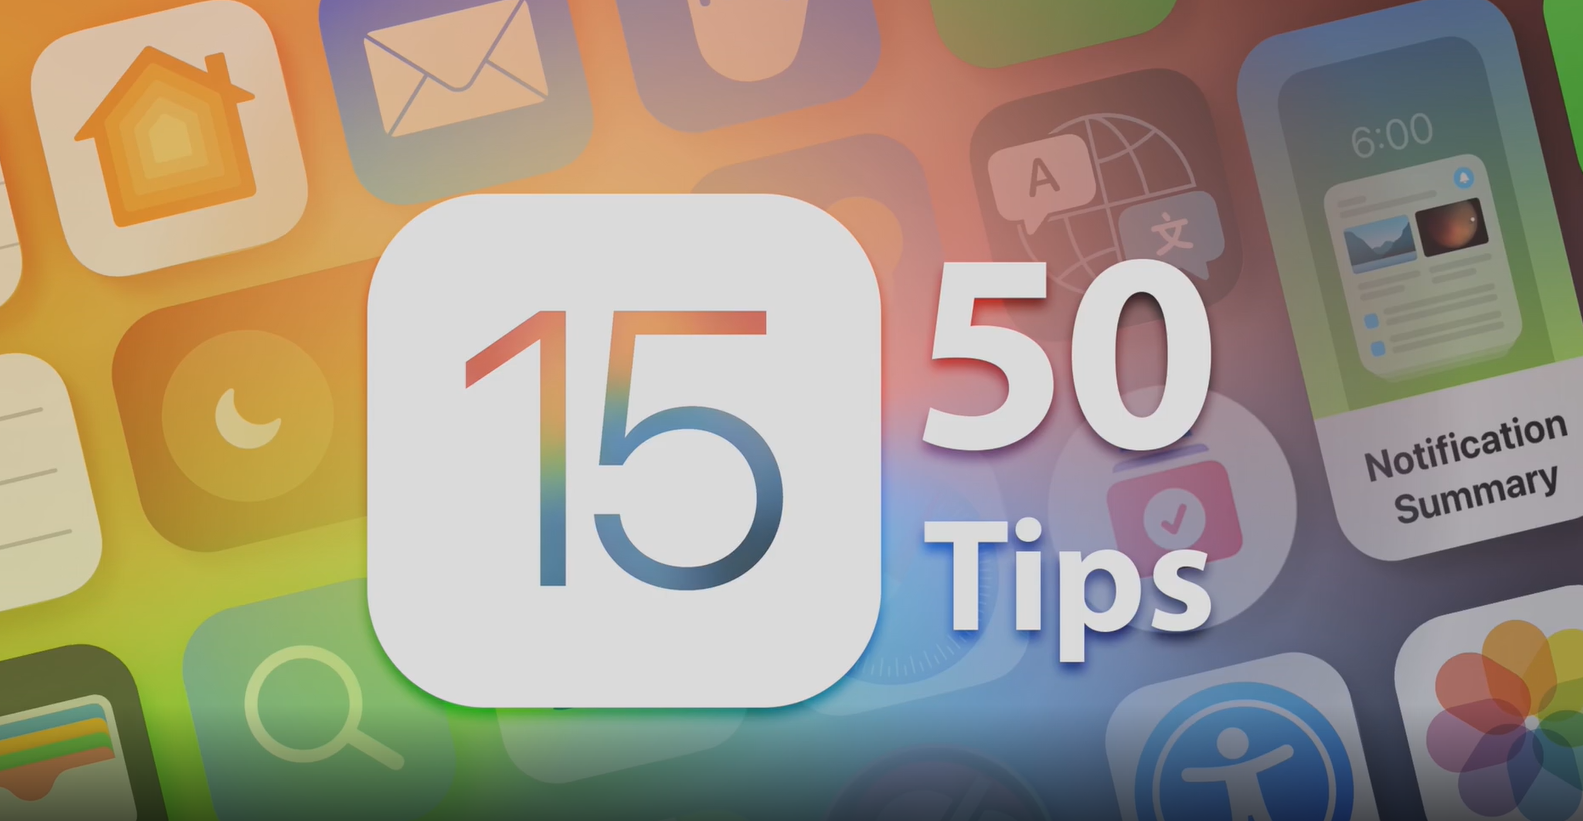 ۵۰ نکته و ترفند در مورد iOS15